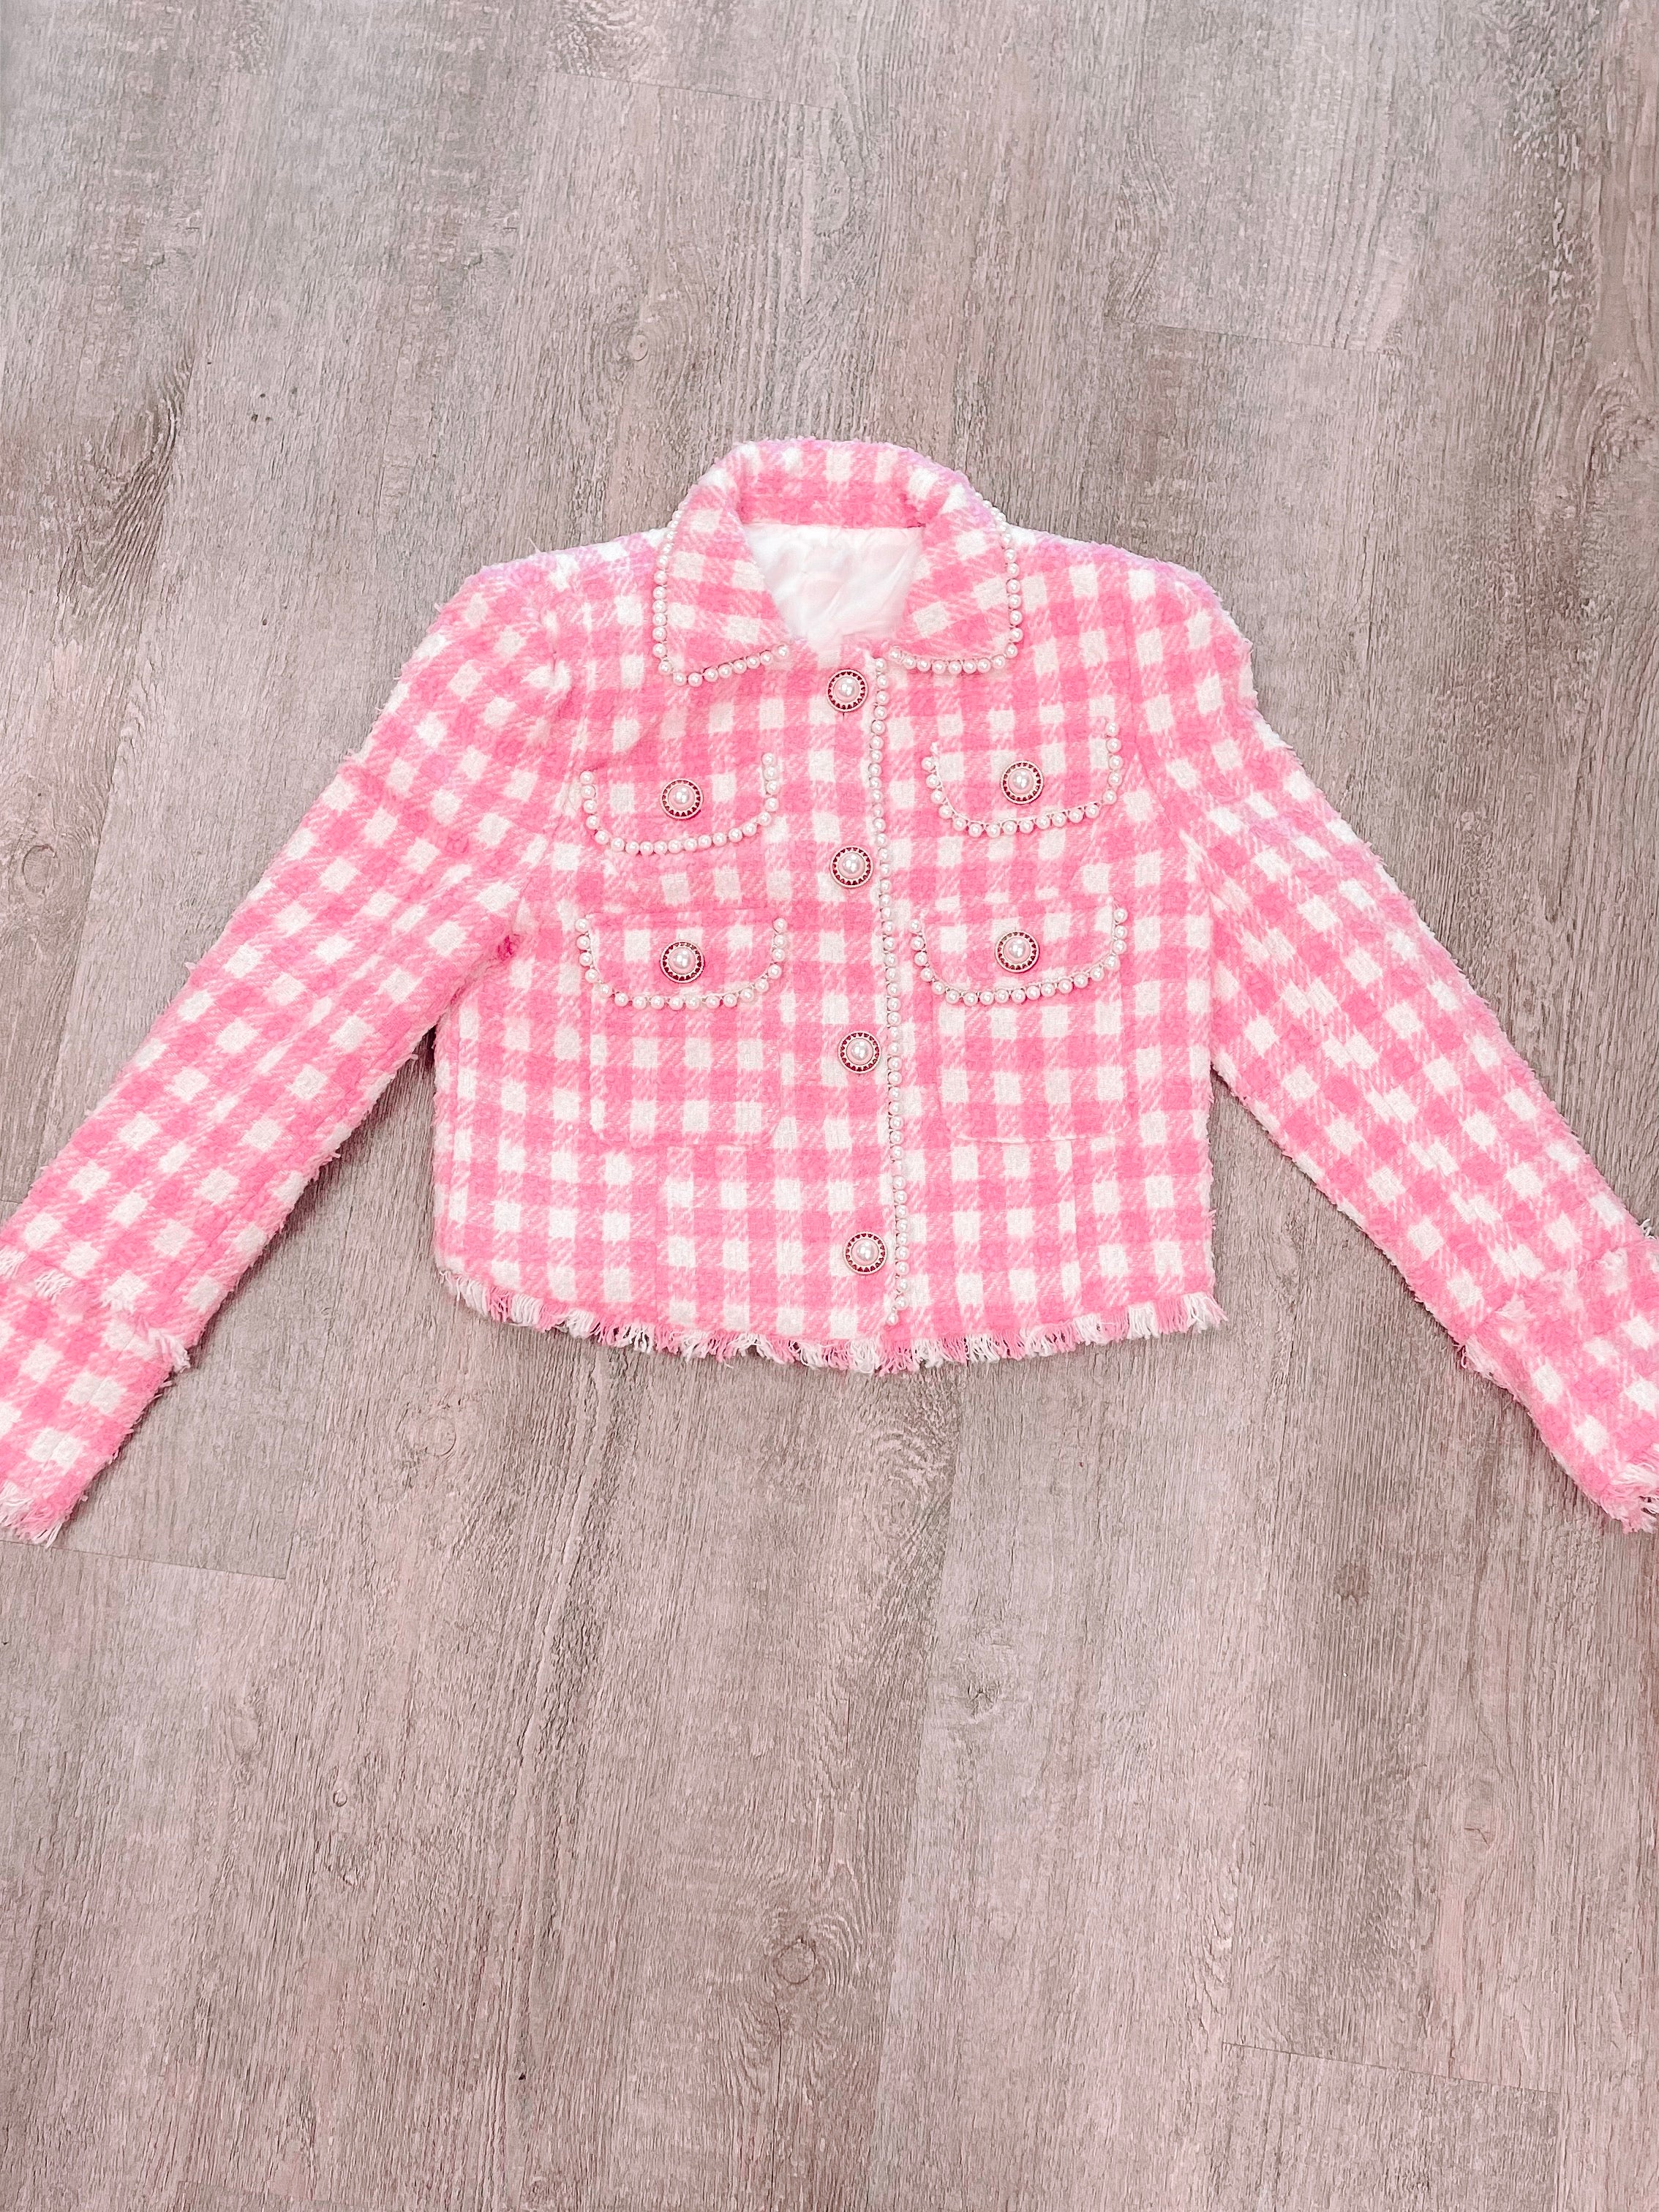 Legally Pink Tweed Jacket | Sassy Shortcake | sassyshortcake.com